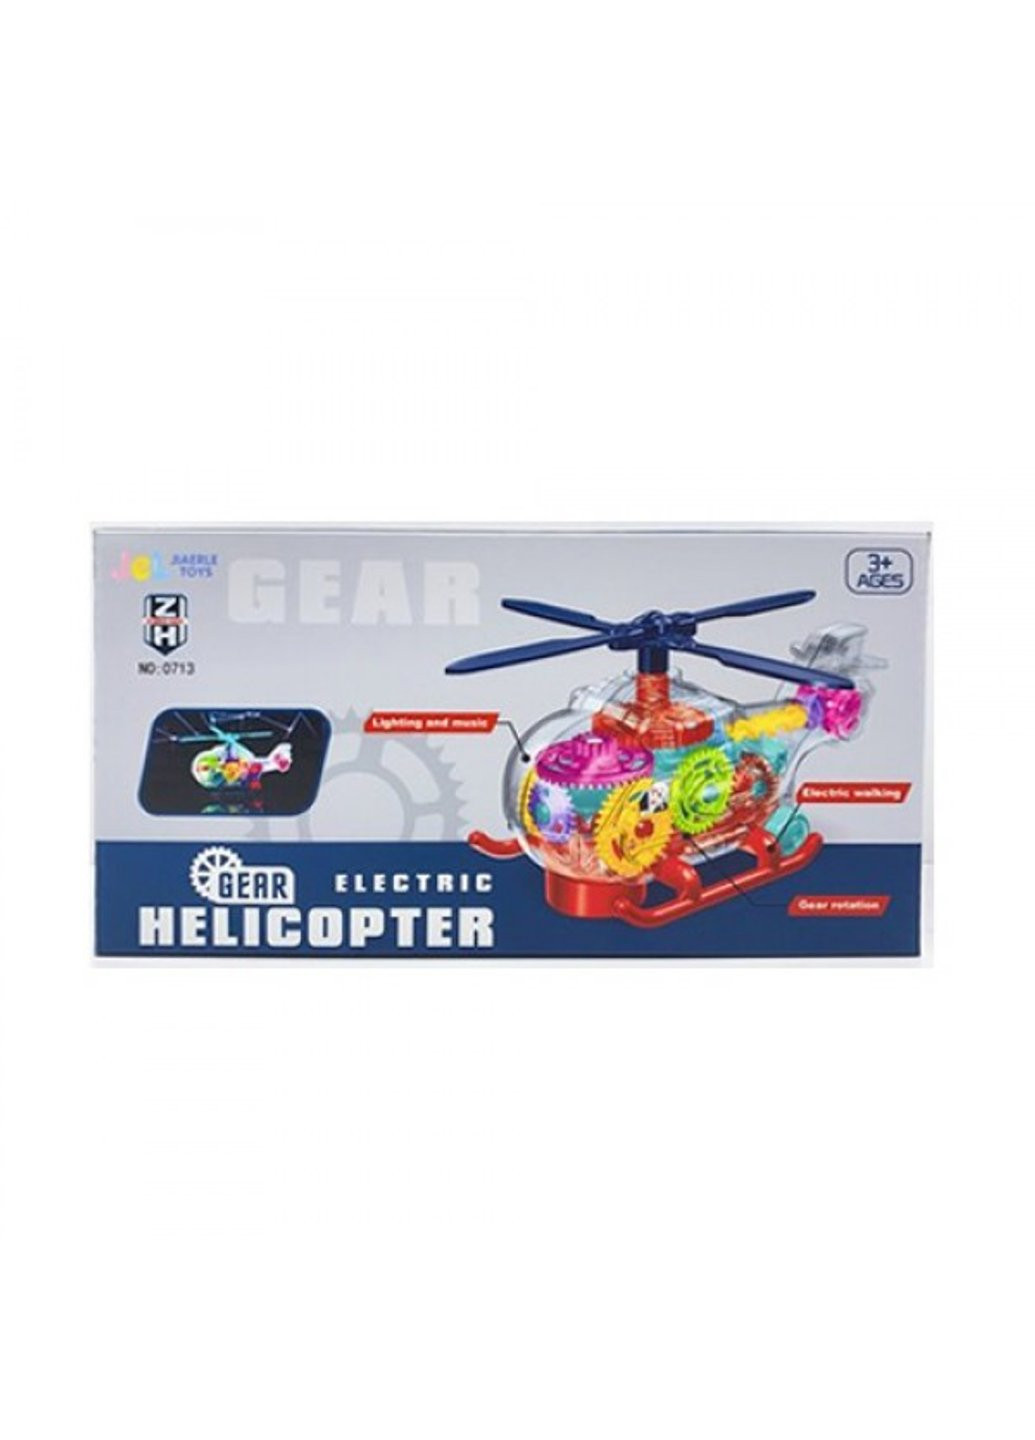 Вертолет игровой B-0713 18 см Power (254708519)